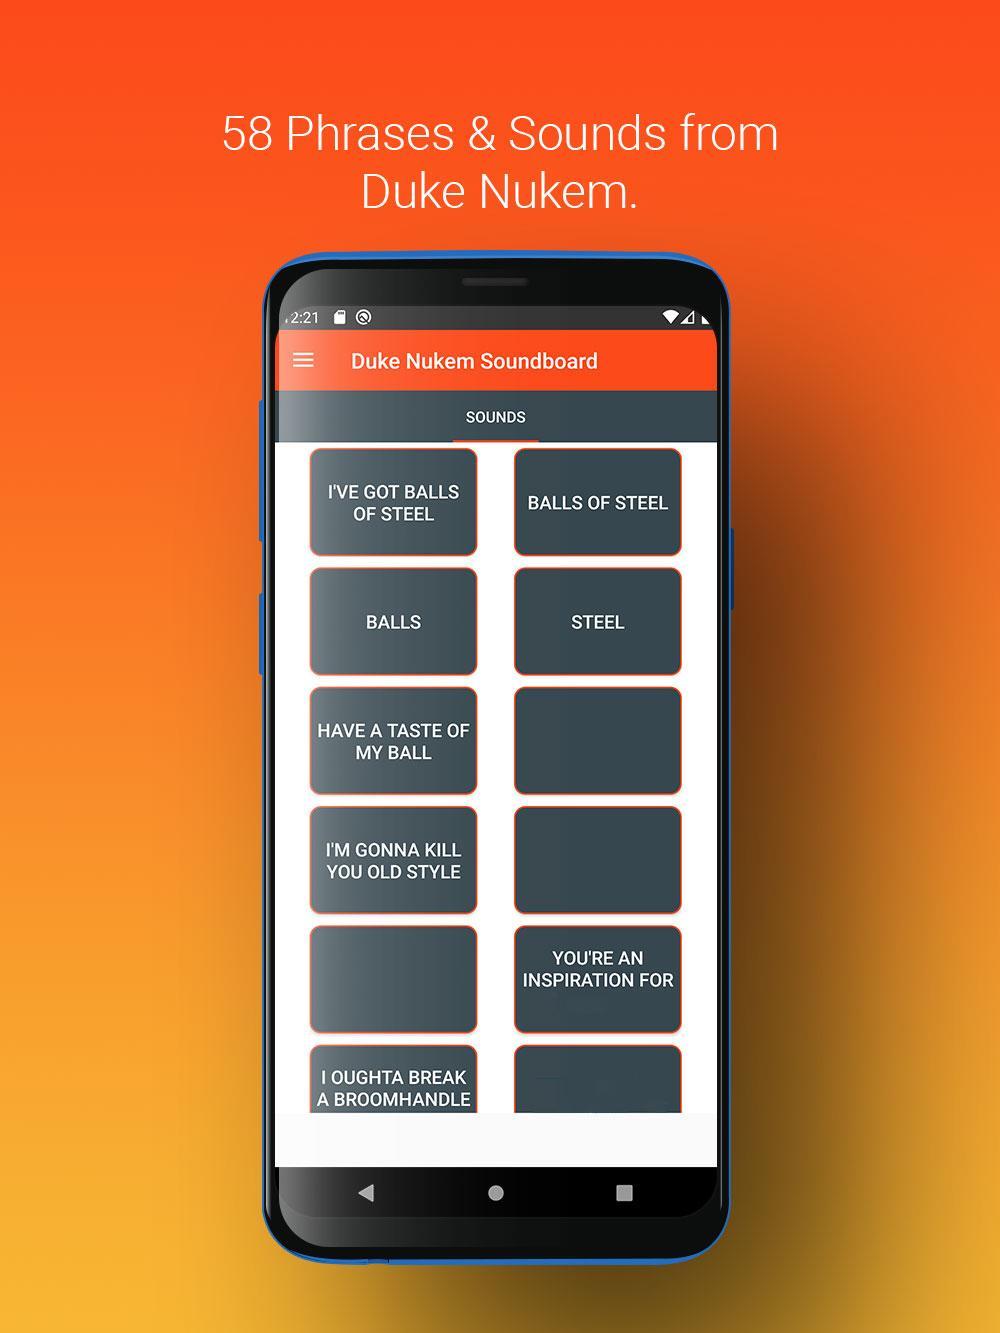 Duke Nukem Soundboard for Android - APK Download